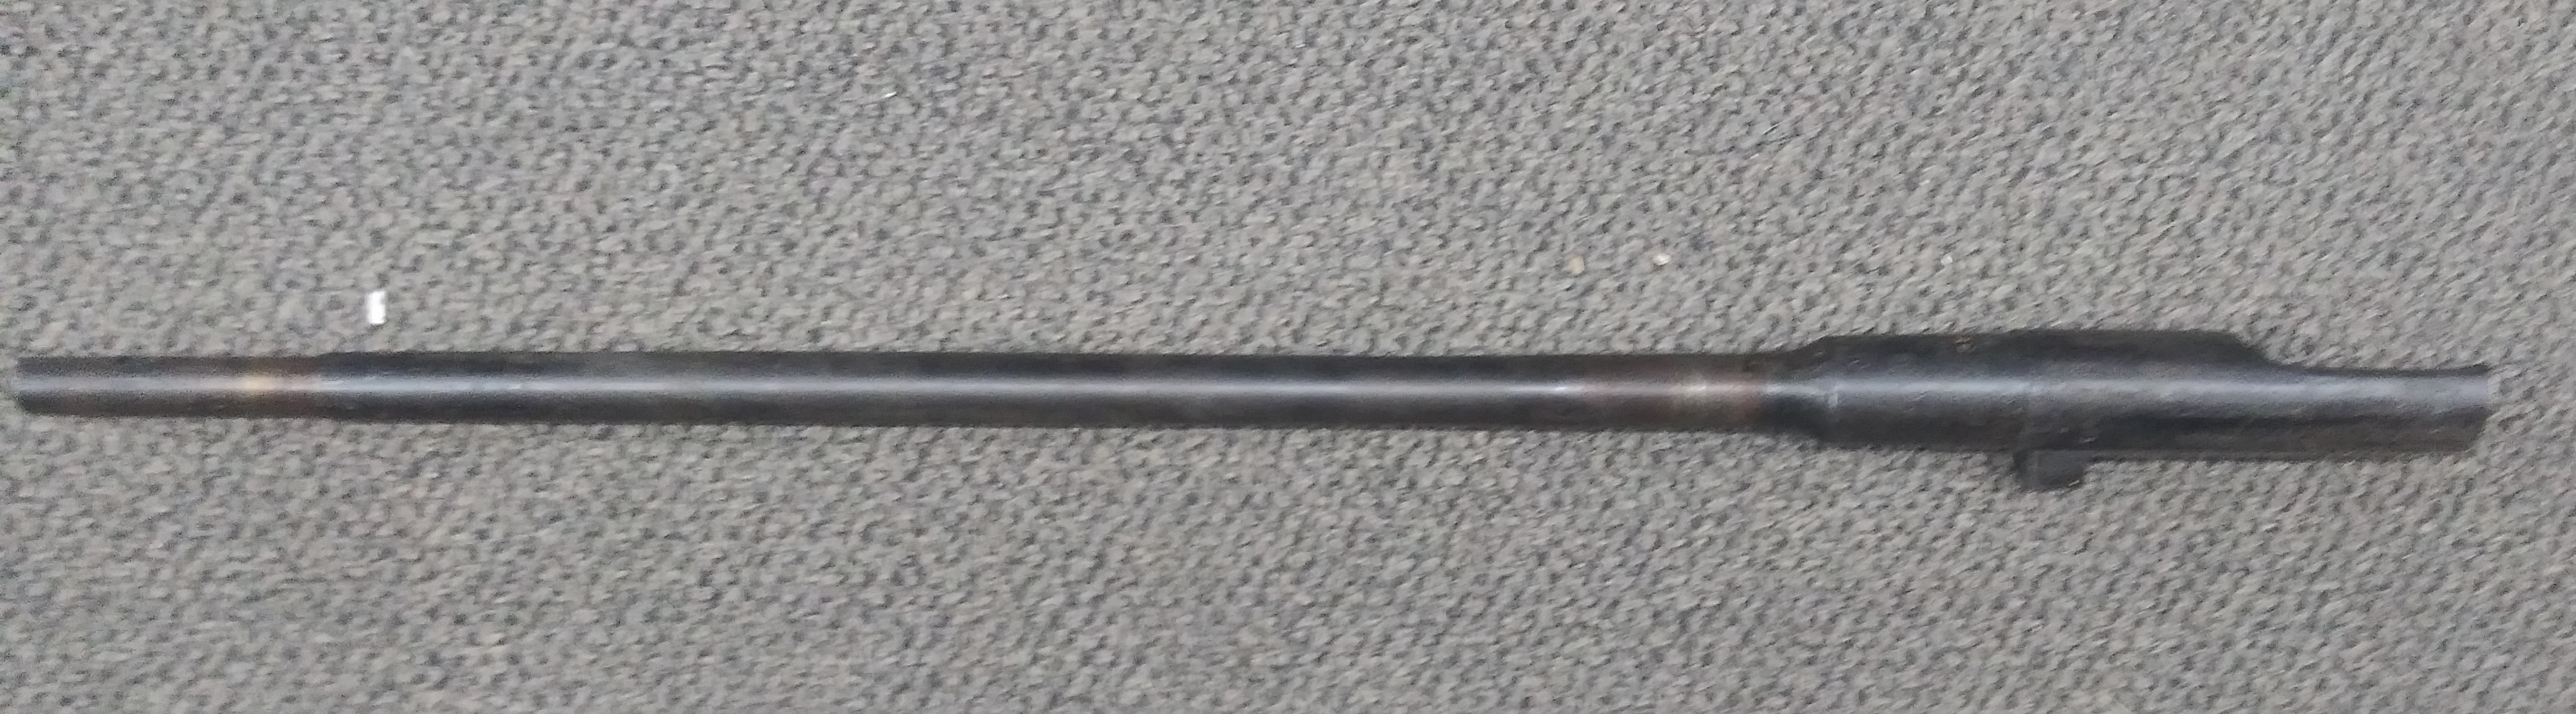 1944 IZHVESK M1944 VG BORE - Mosin Nagant Rifle